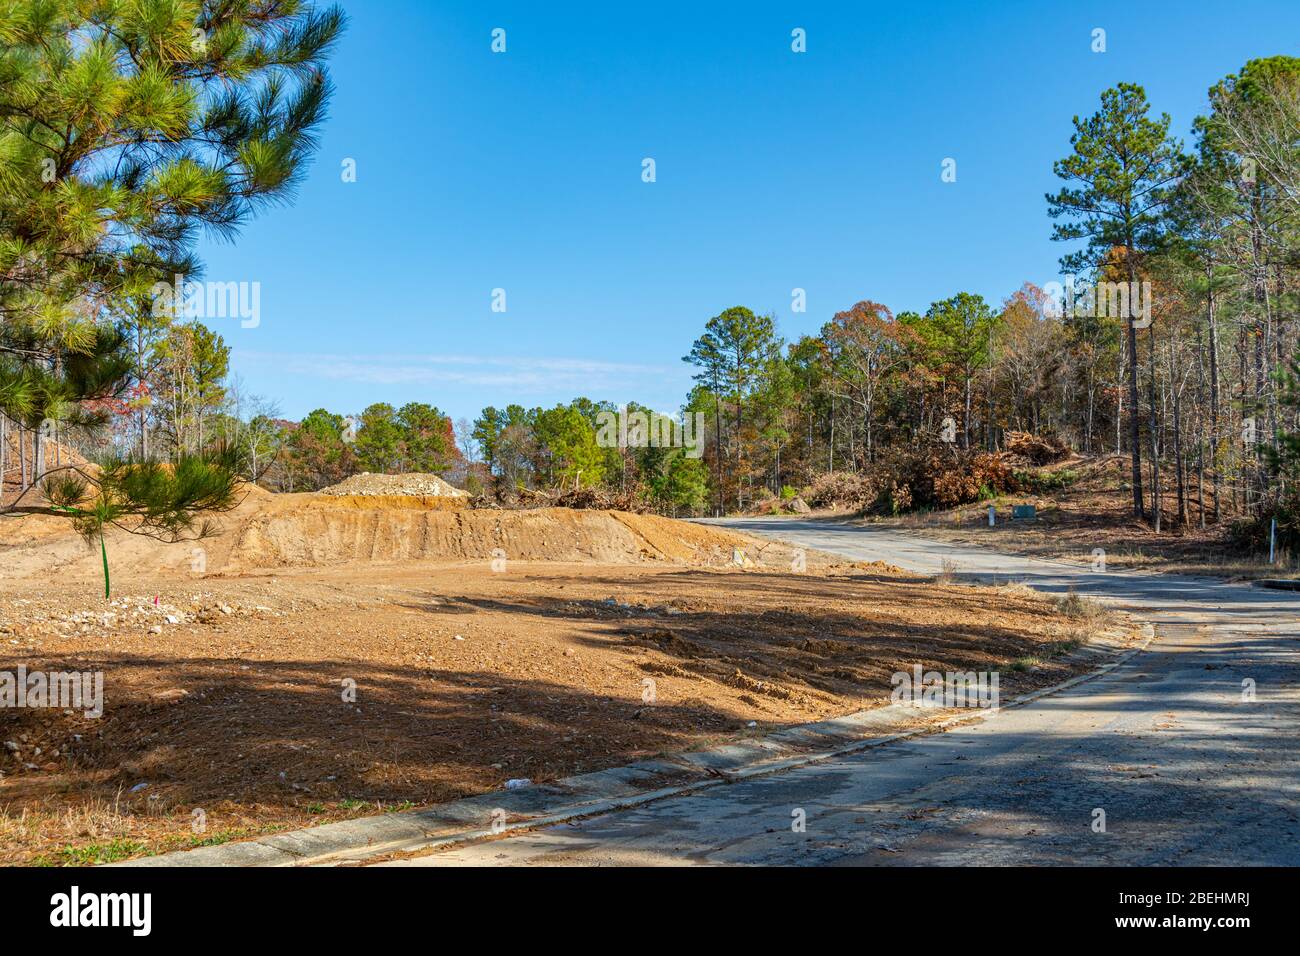 Travaux en cours de construction de routes et d'autres infrastructures pour une nouvelle subdivision résidentielle en Alabama Banque D'Images